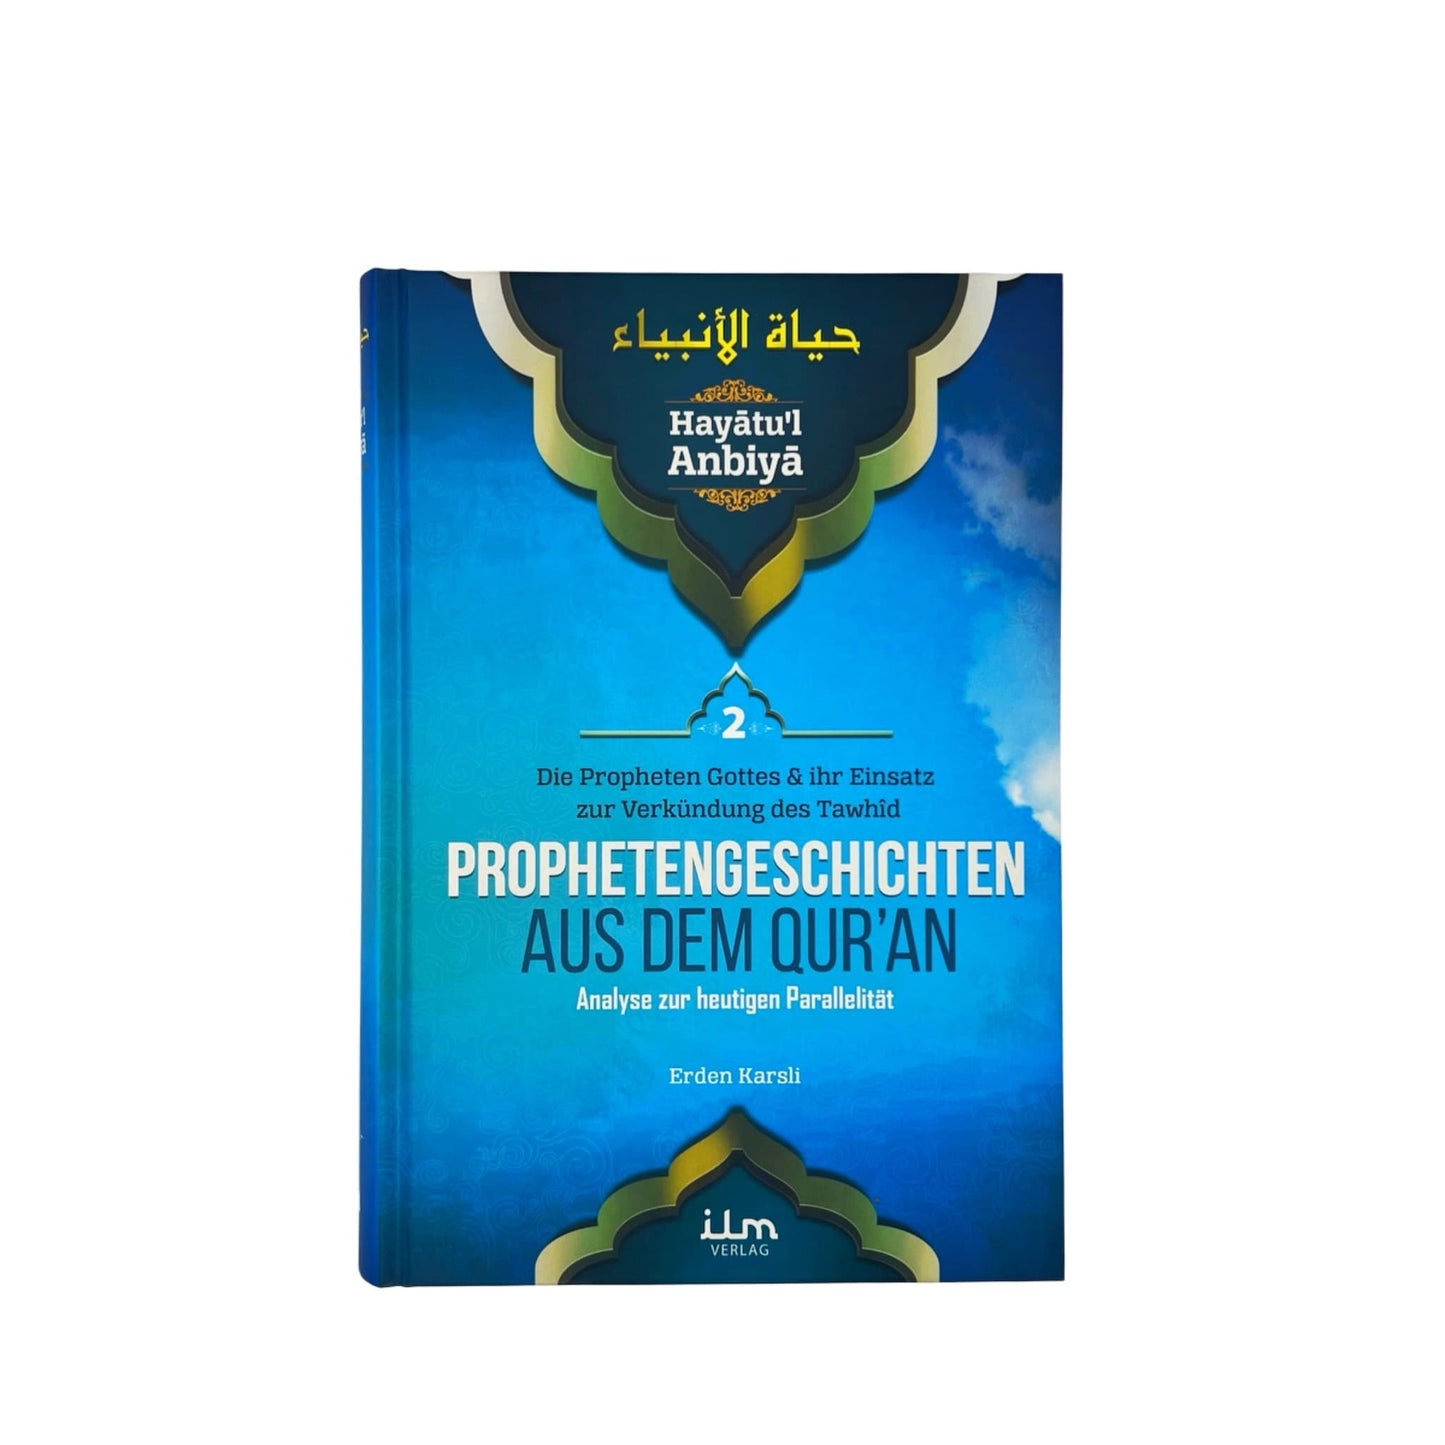 Hayatul Anbiya Band 2 von 3 - Prophetengeschichten aus dem Quran